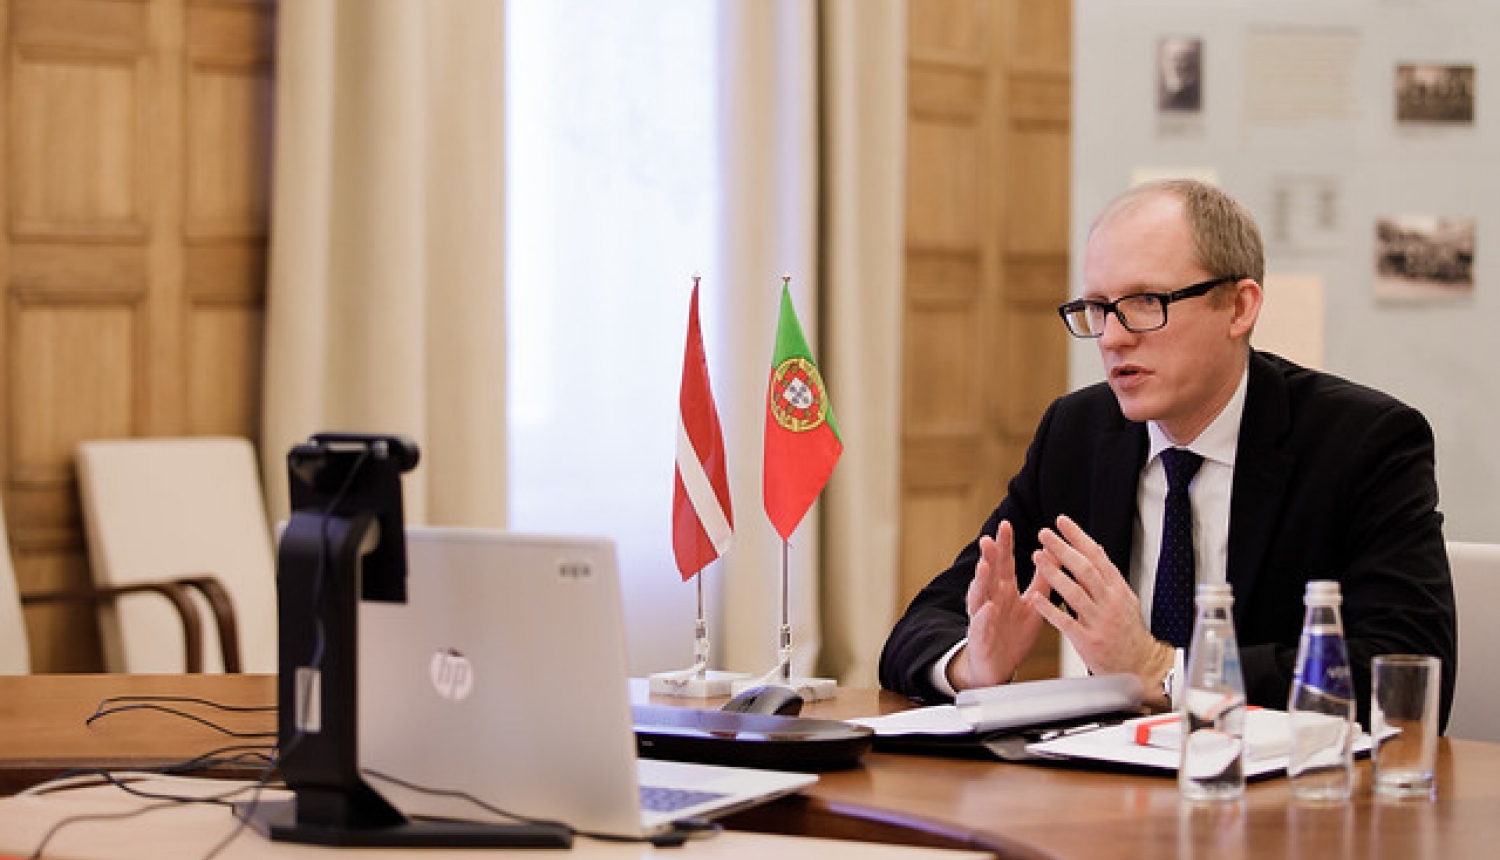 Valsts sekretārs ar jauno Portugāles vēstnieci Latvijā pārrunā divpusējās sadarbības veicināšanu